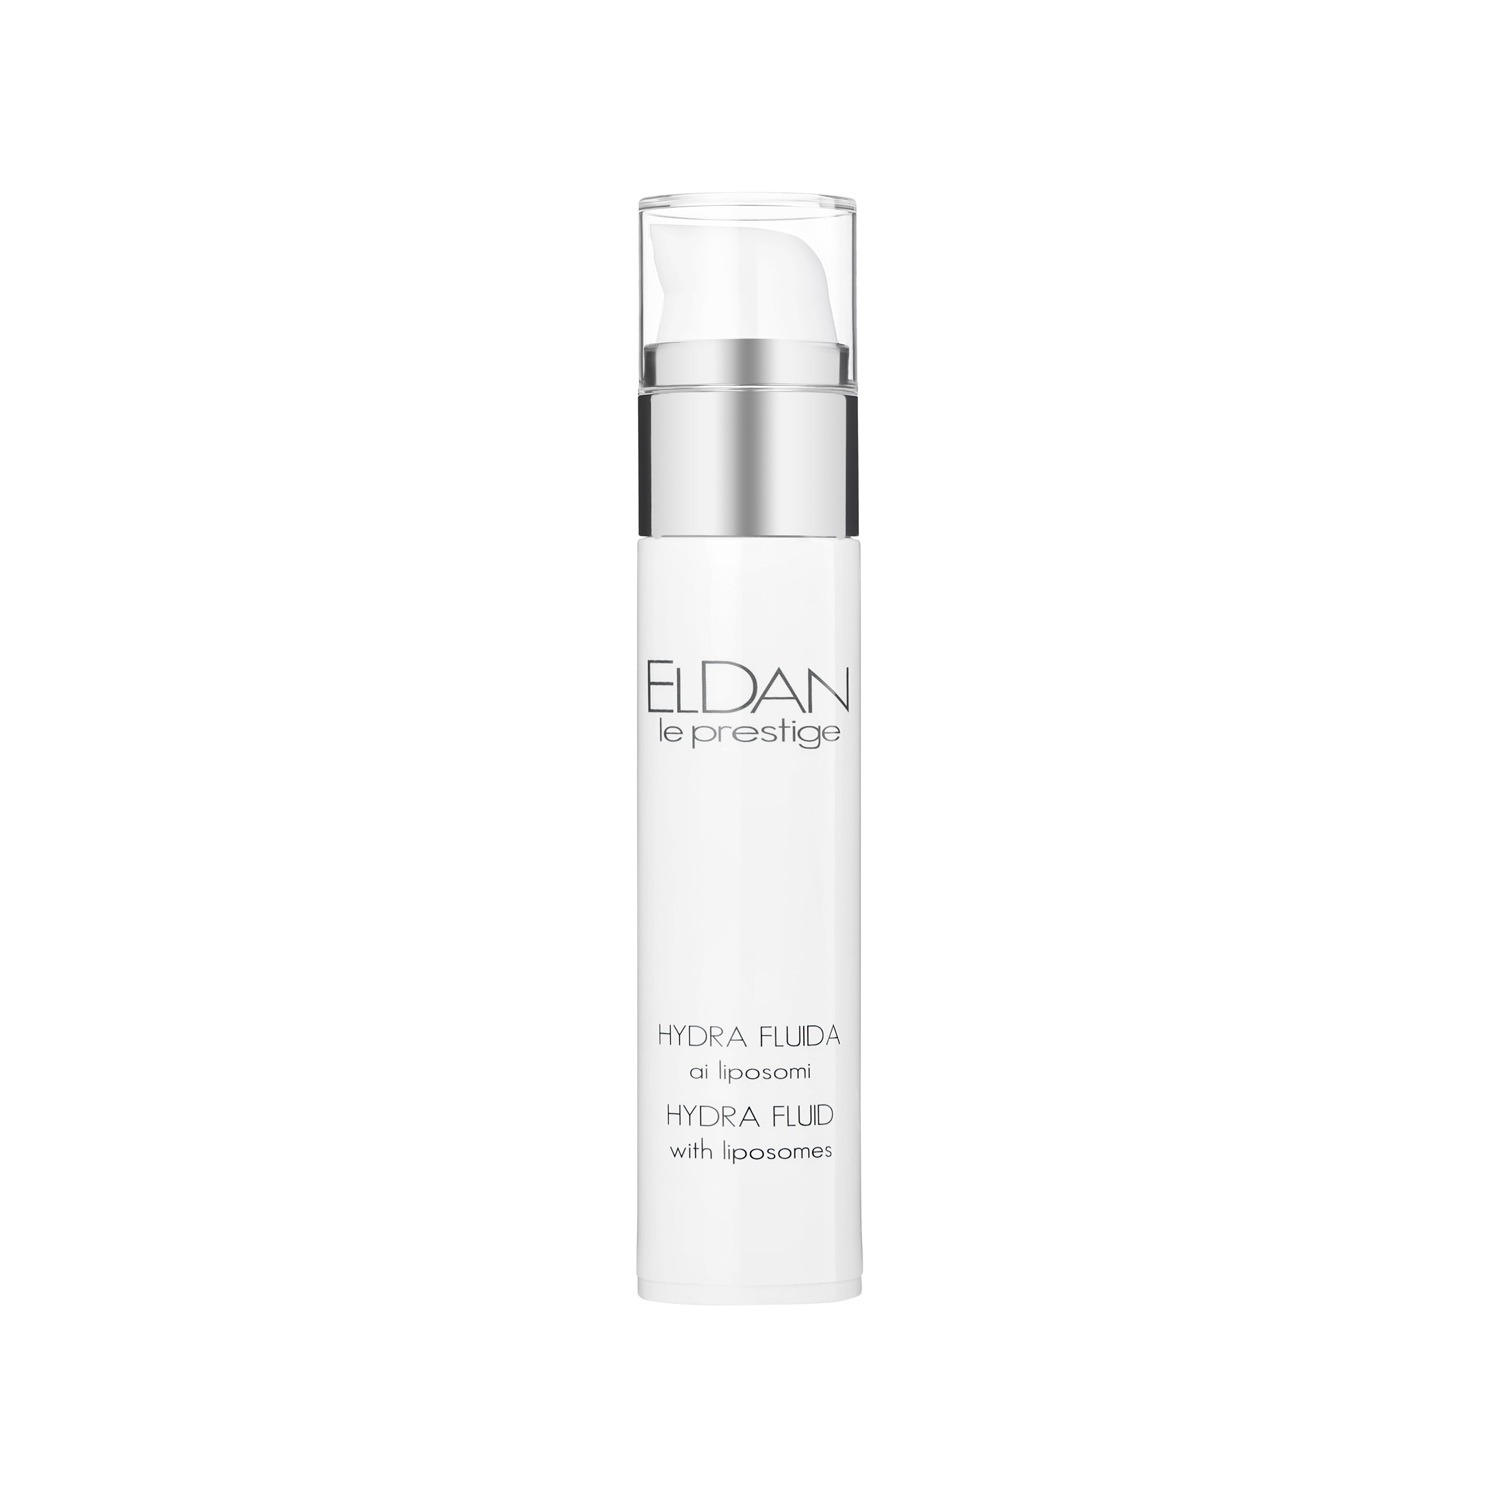 Сыворотка для лица Eldan Cosmetics Hydra Fluid With Liposomes увлажняющая, 50 мл eldan cosmetics лечебный акне лосьон 125 0